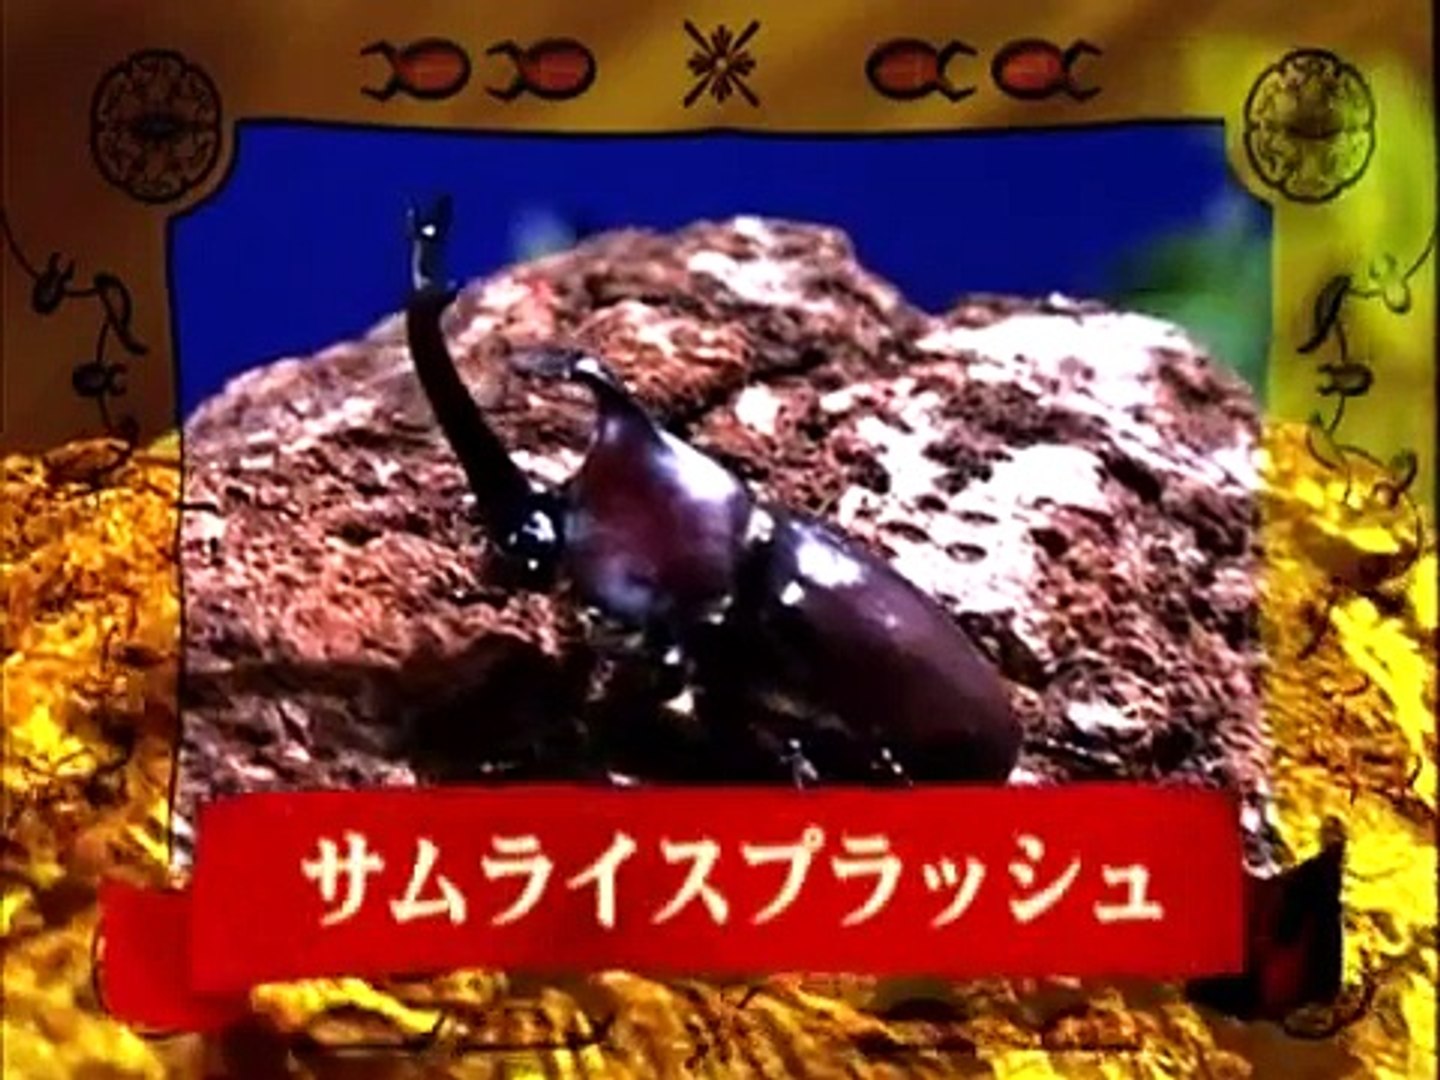 5 カブト クワガタ世界最強タッグトーナメント Beetles Stag Beetles World Strongest Tournament Video Dailymotion